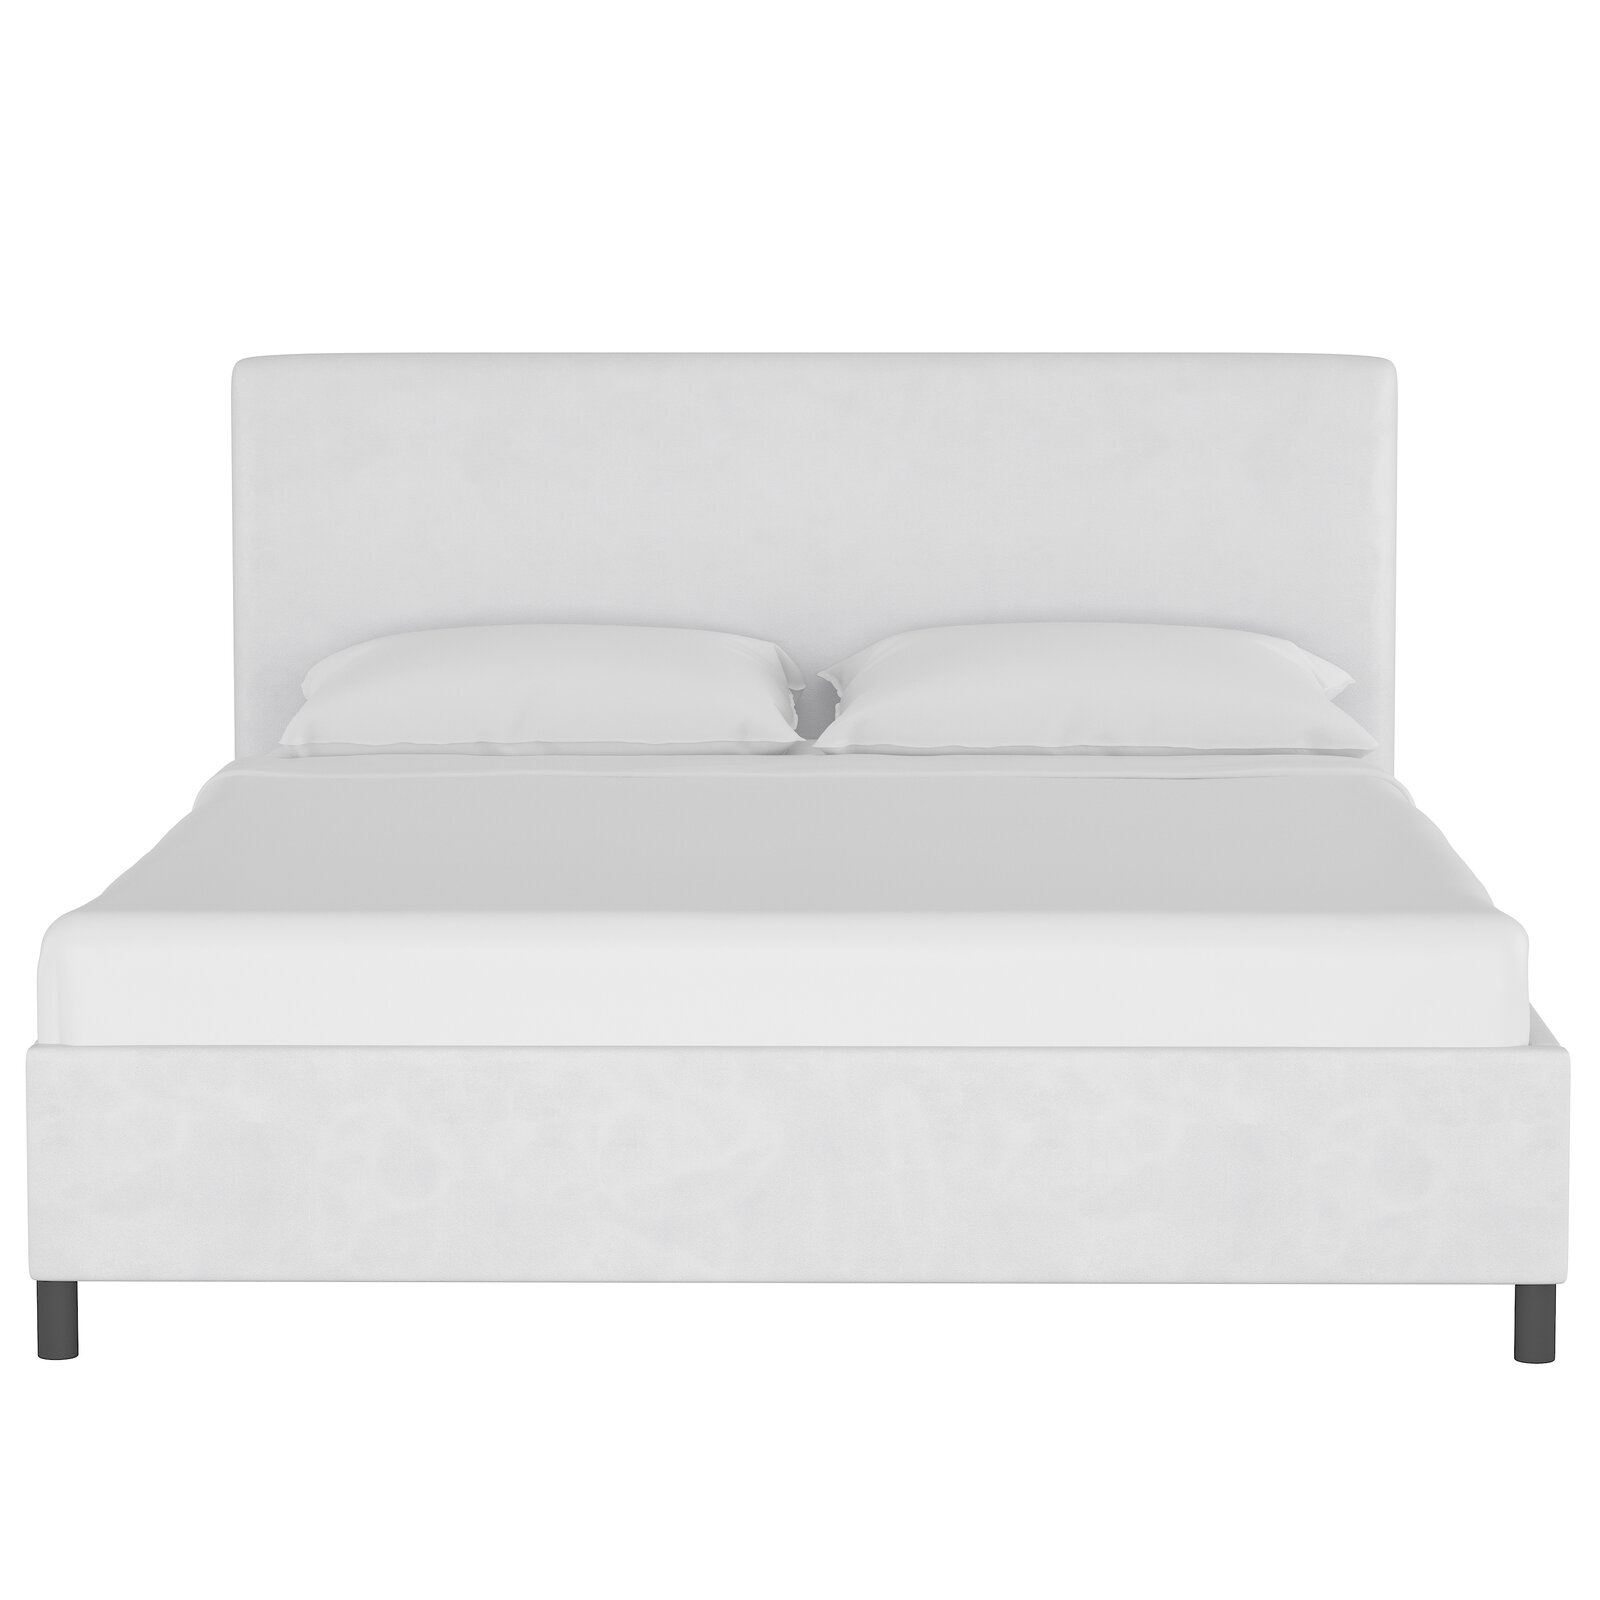 Upholstered Low Profile Platform Bed - Image 4